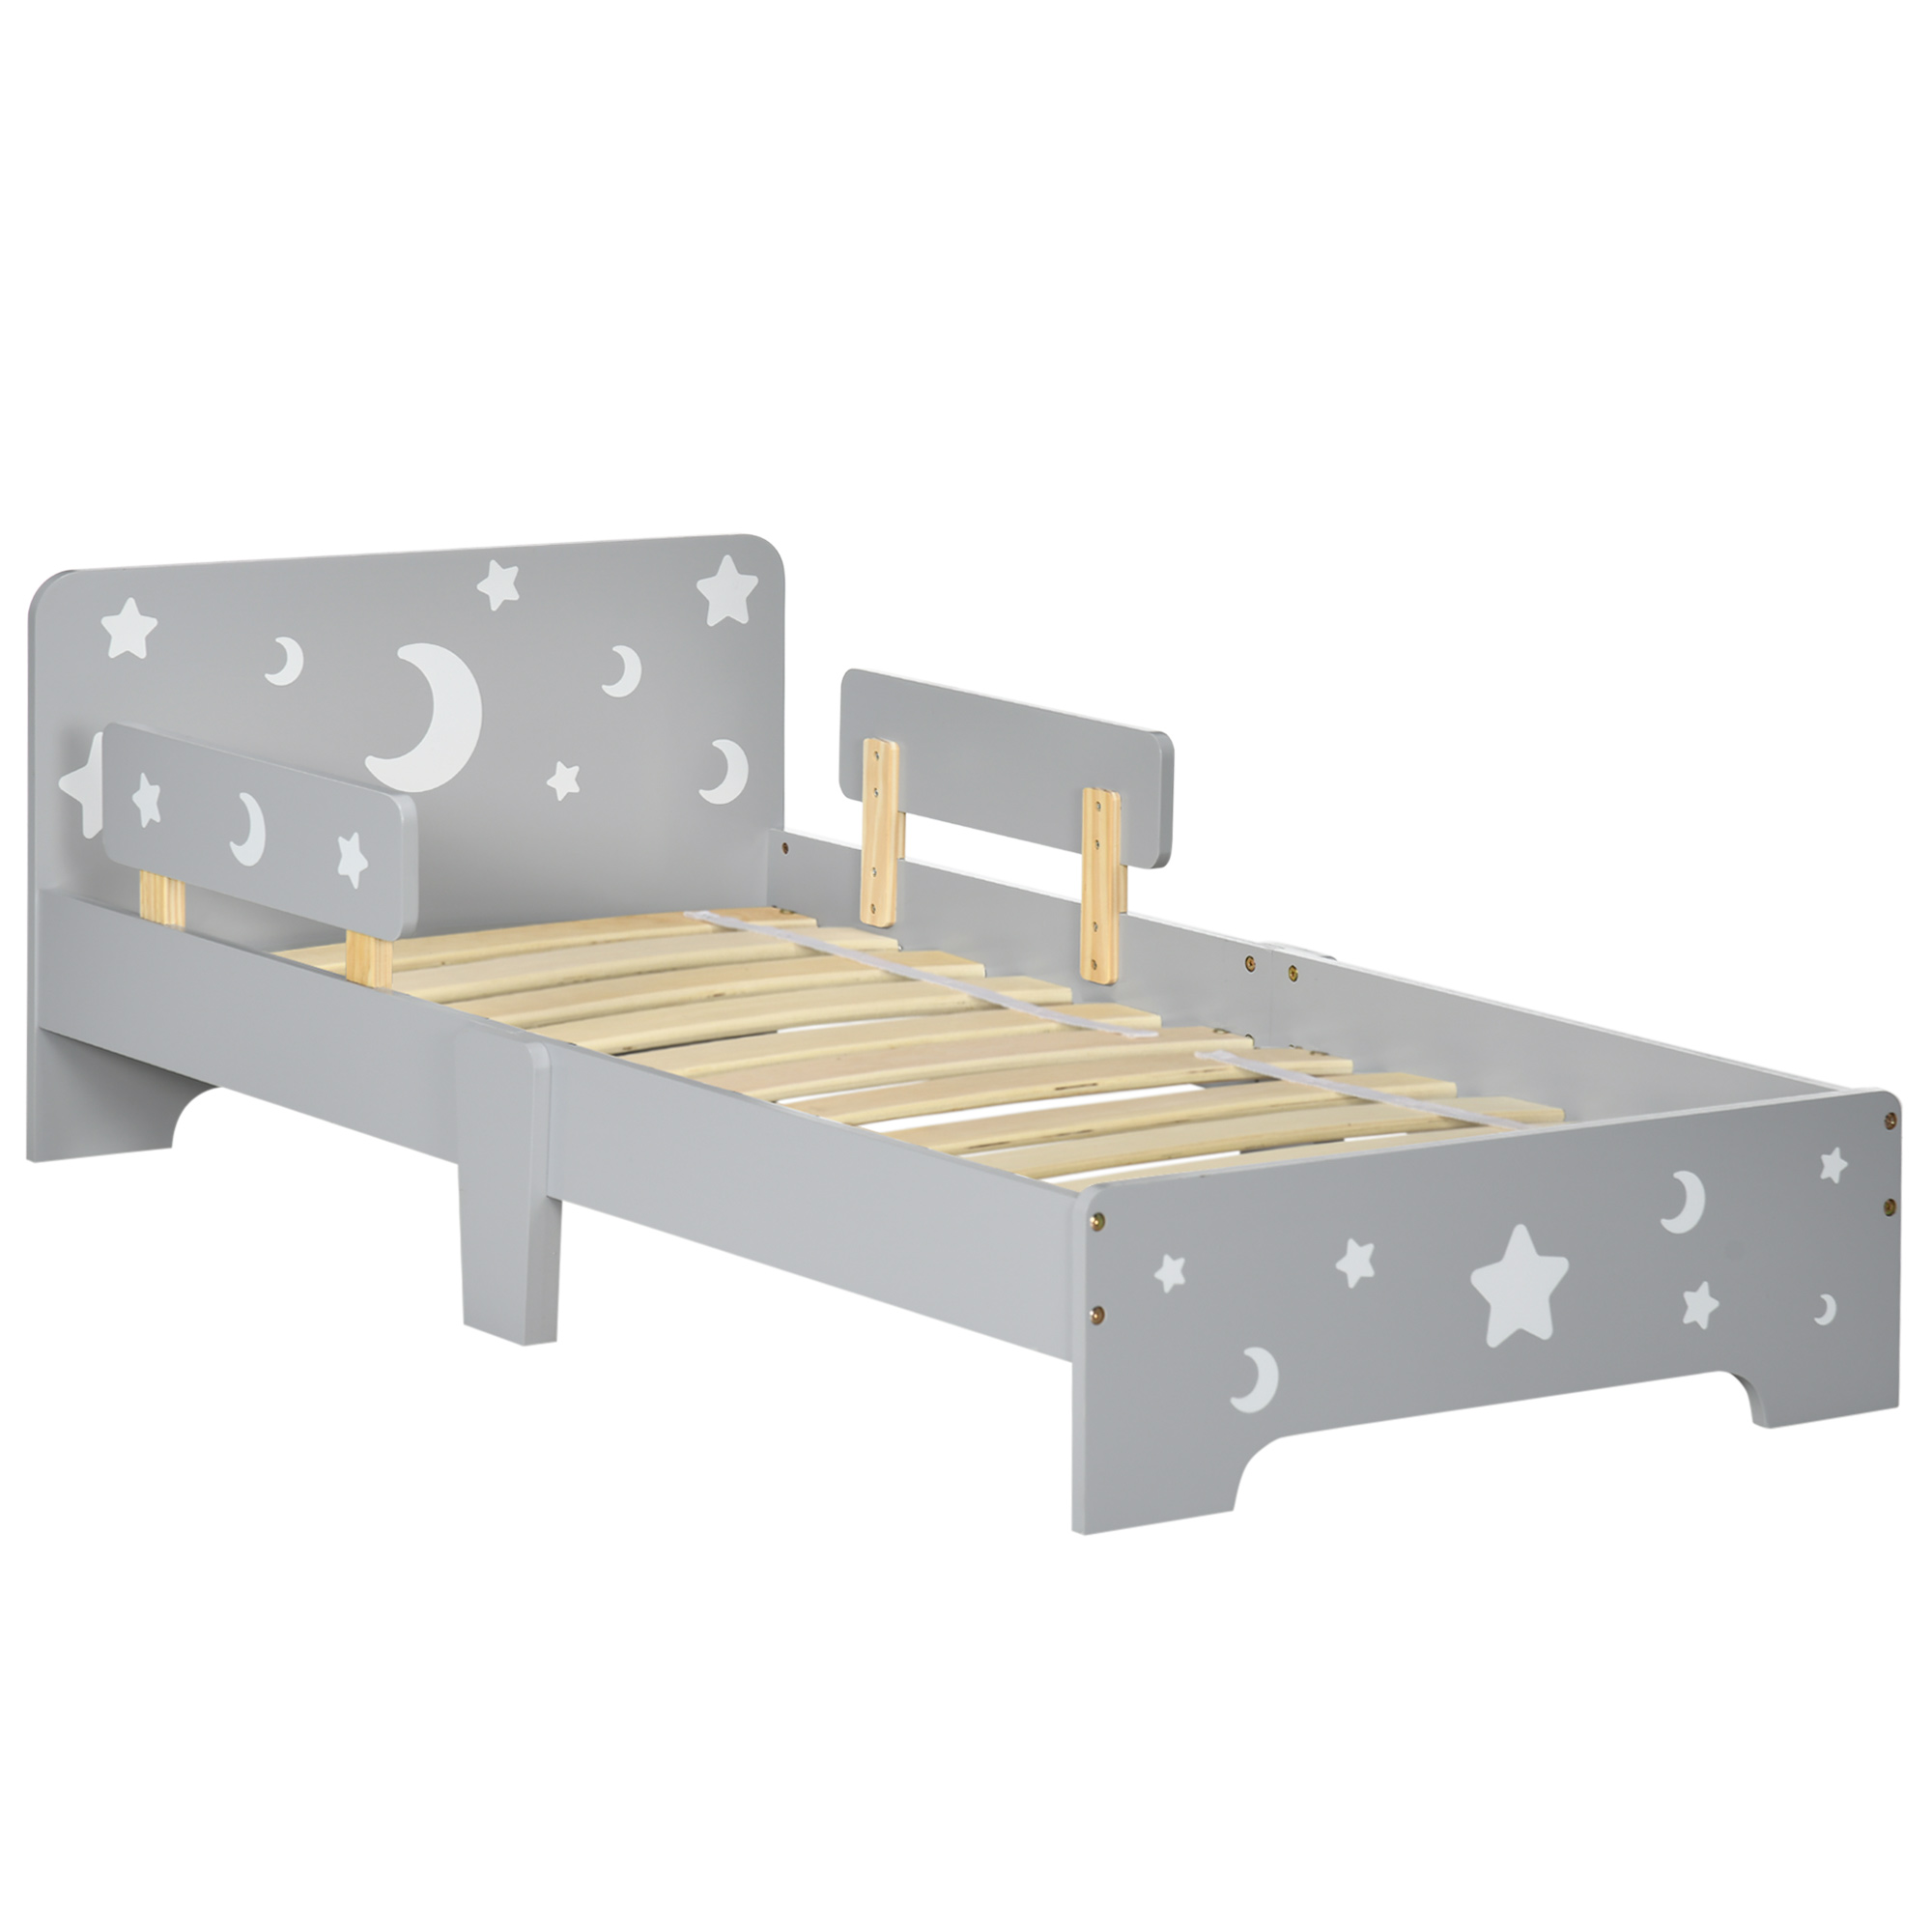 ZONEKIZ Παιδικό κρεβάτι 3-6 ετών με αστεράκια και σχέδια φεγγαριού Από MDF και νοβοπάν